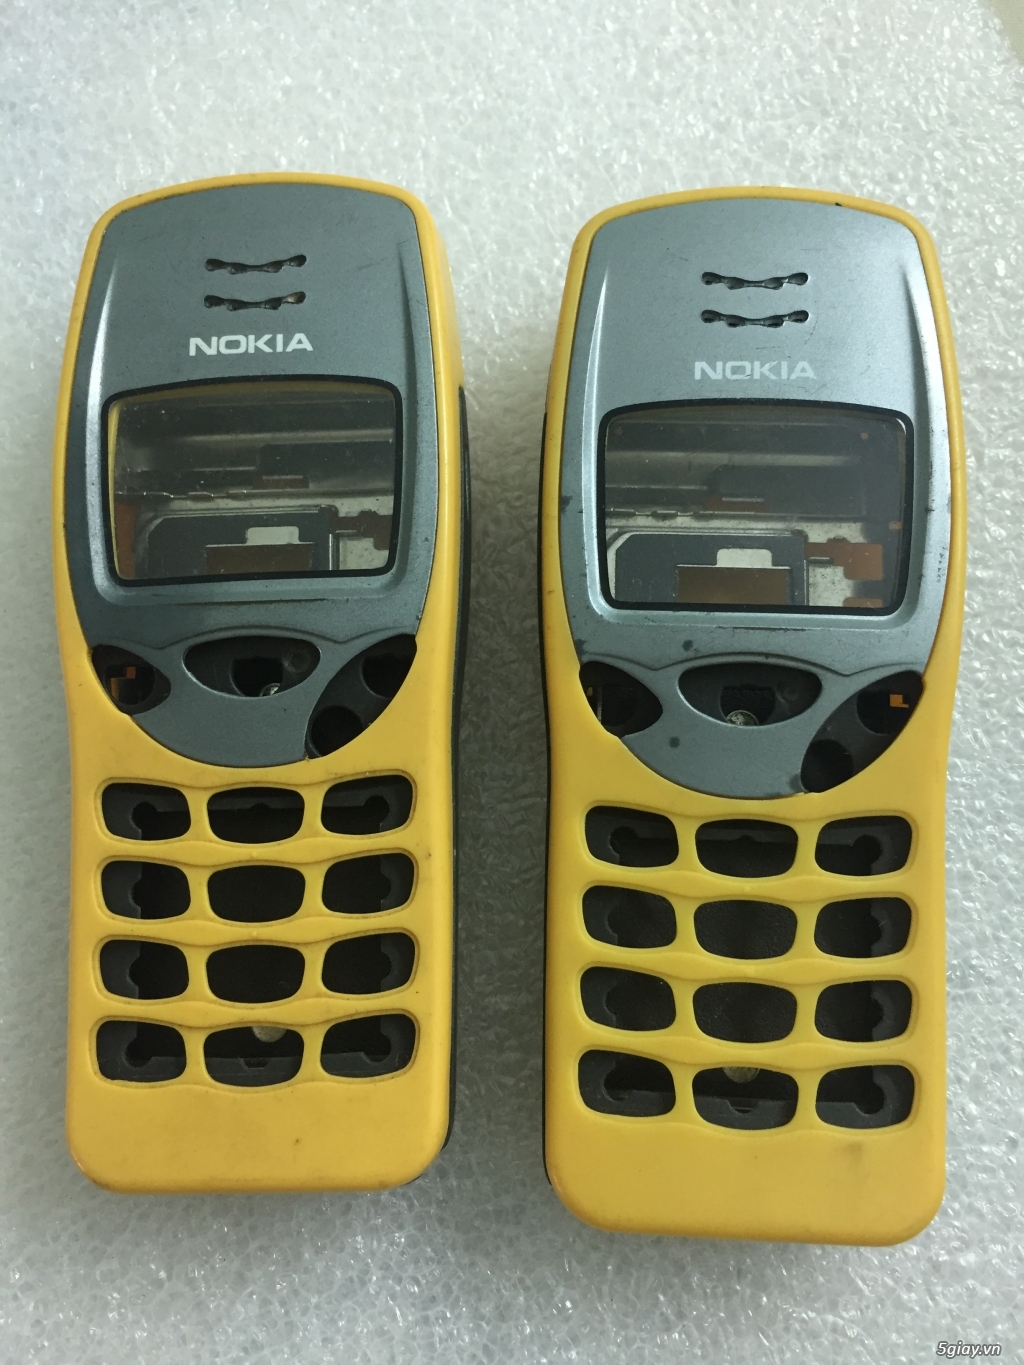 [HCM] - Nokia cũ cổ các loại rẻ bền đẹp AE ghé xem chọn lựa. - 6